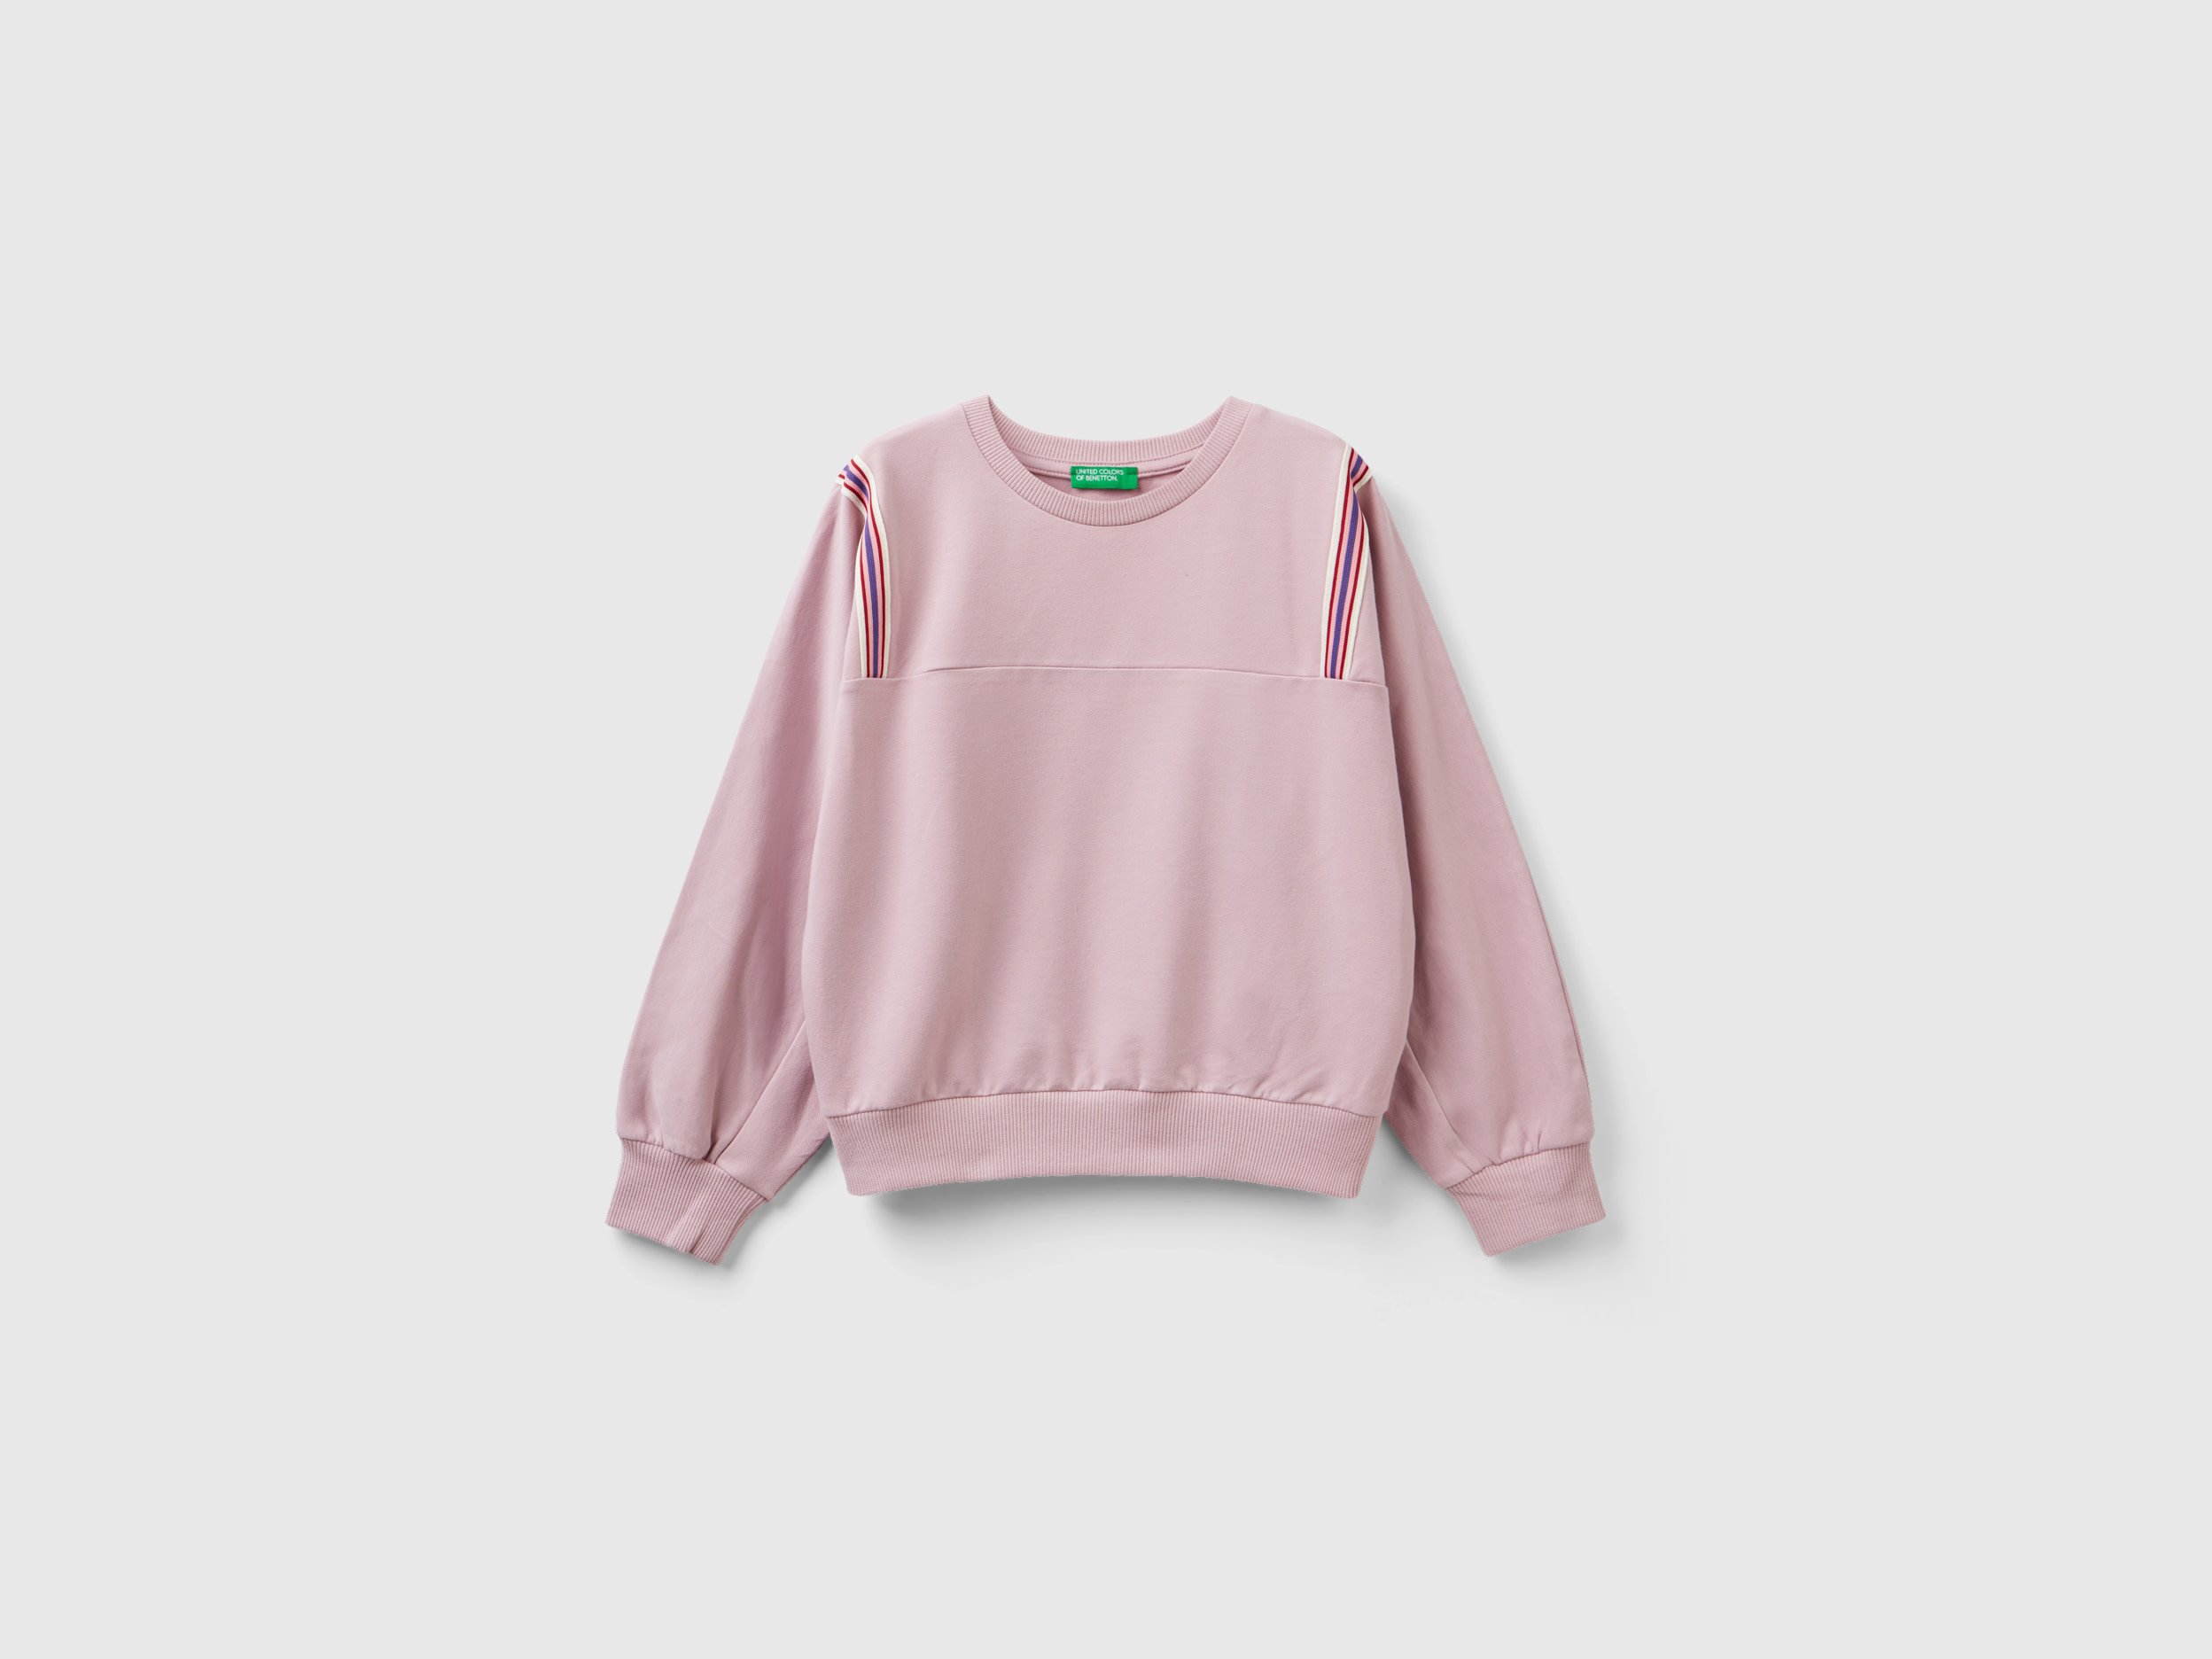 Benetton, Sweatshirt With Striped Details, size 2XL, Pink, Kids